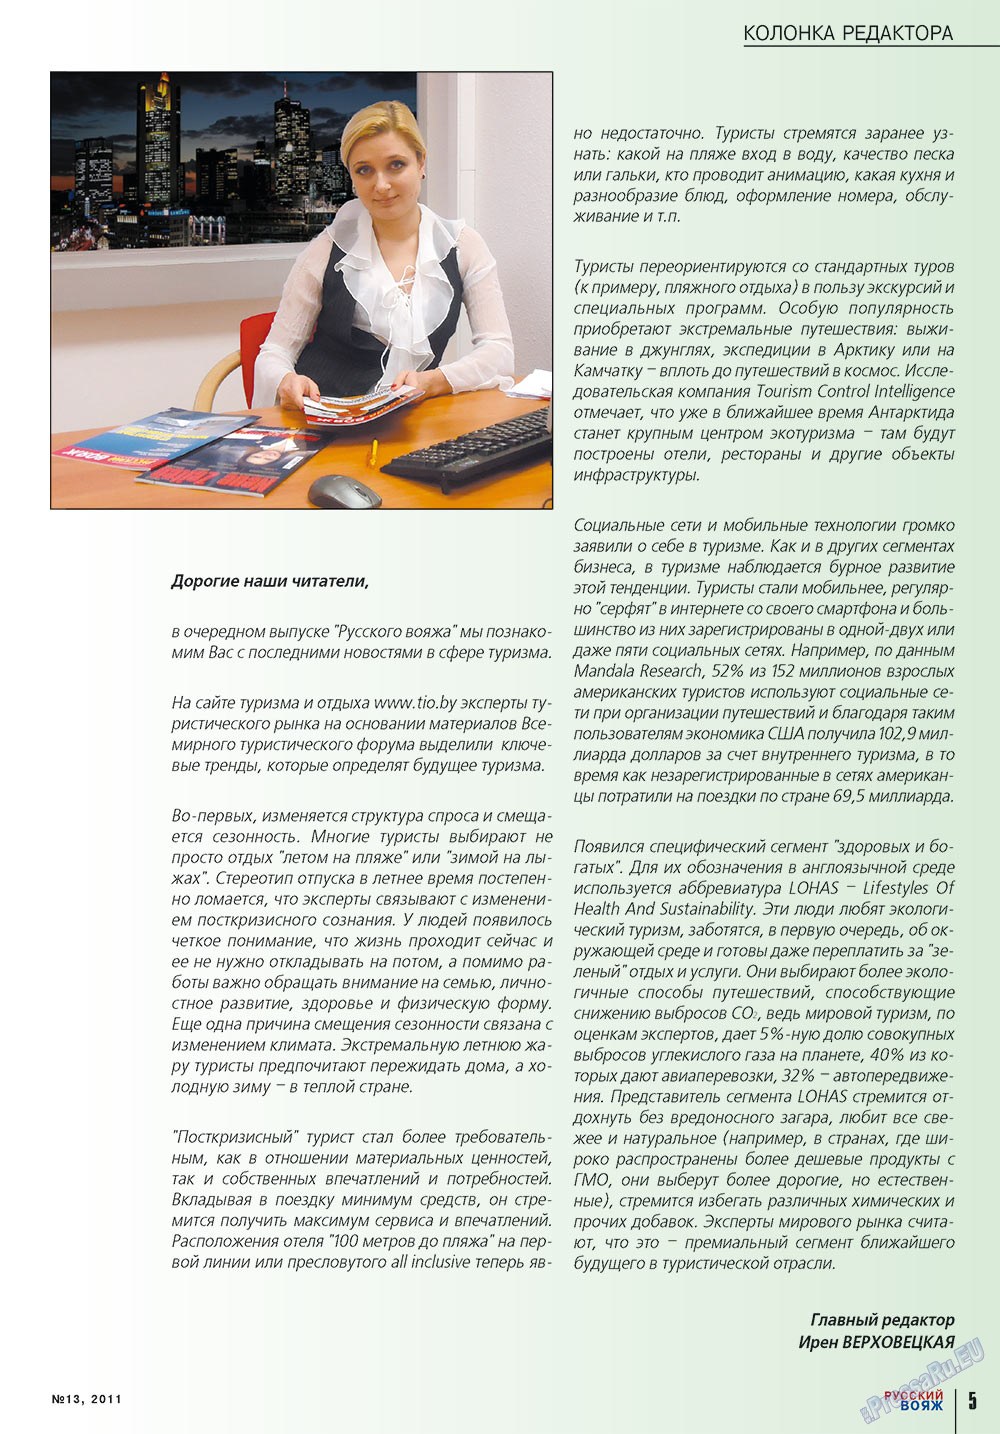 Русский вояж (журнал). 2011 год, номер 13, стр. 5